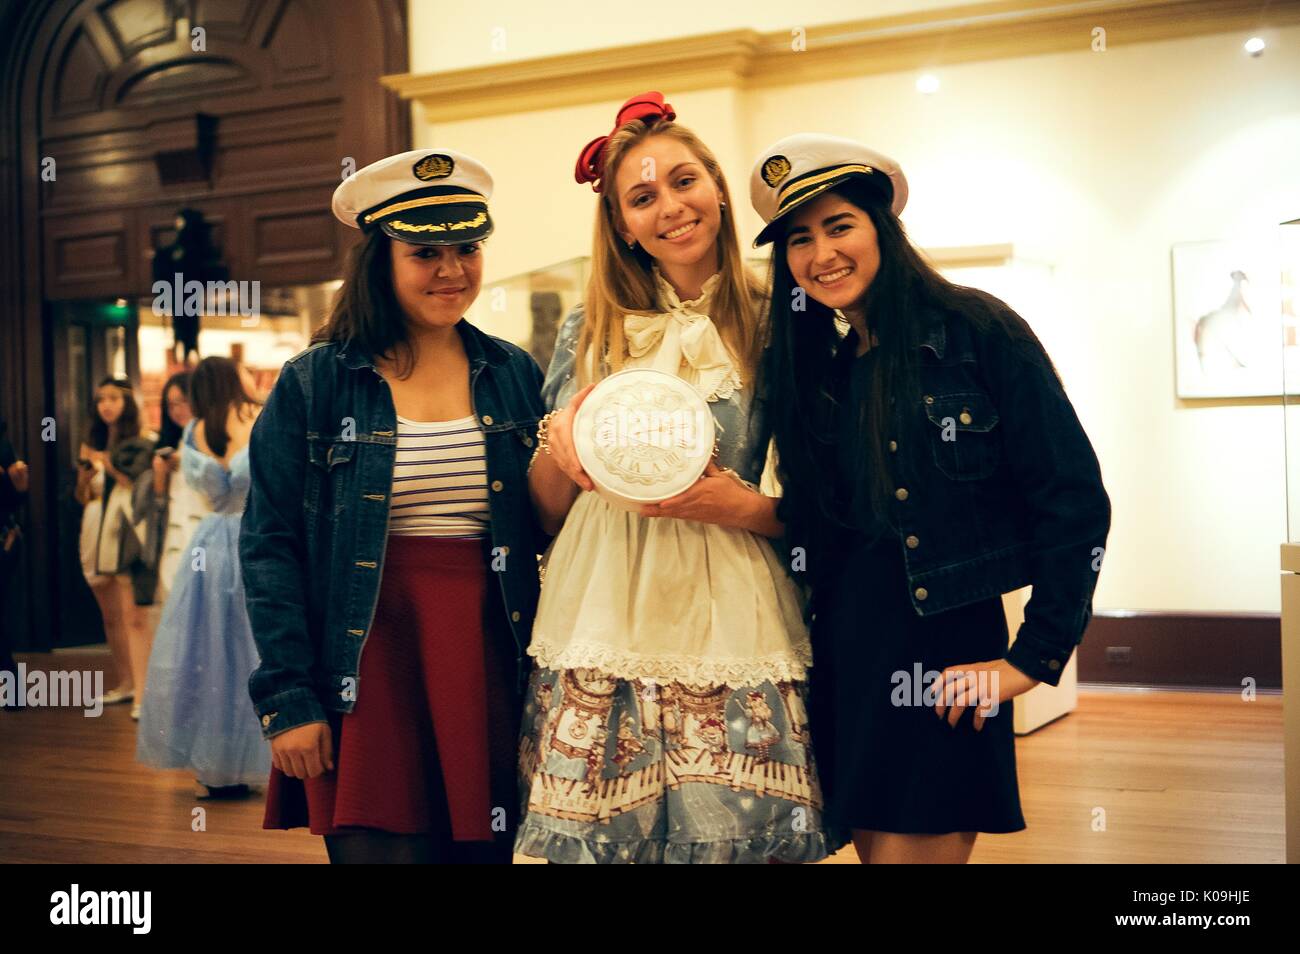 Drei Studenten posieren für ein Foto, zwei Mädchen auf den Enden werden als Segler mit Sailor Hüte und das Mädchen in der Mitte ist, wie Alice im Wunderland gekleidet und hält eine Uhr, 2015 bekleidet. Mit freundlicher Genehmigung von Eric Chen. Stockfoto